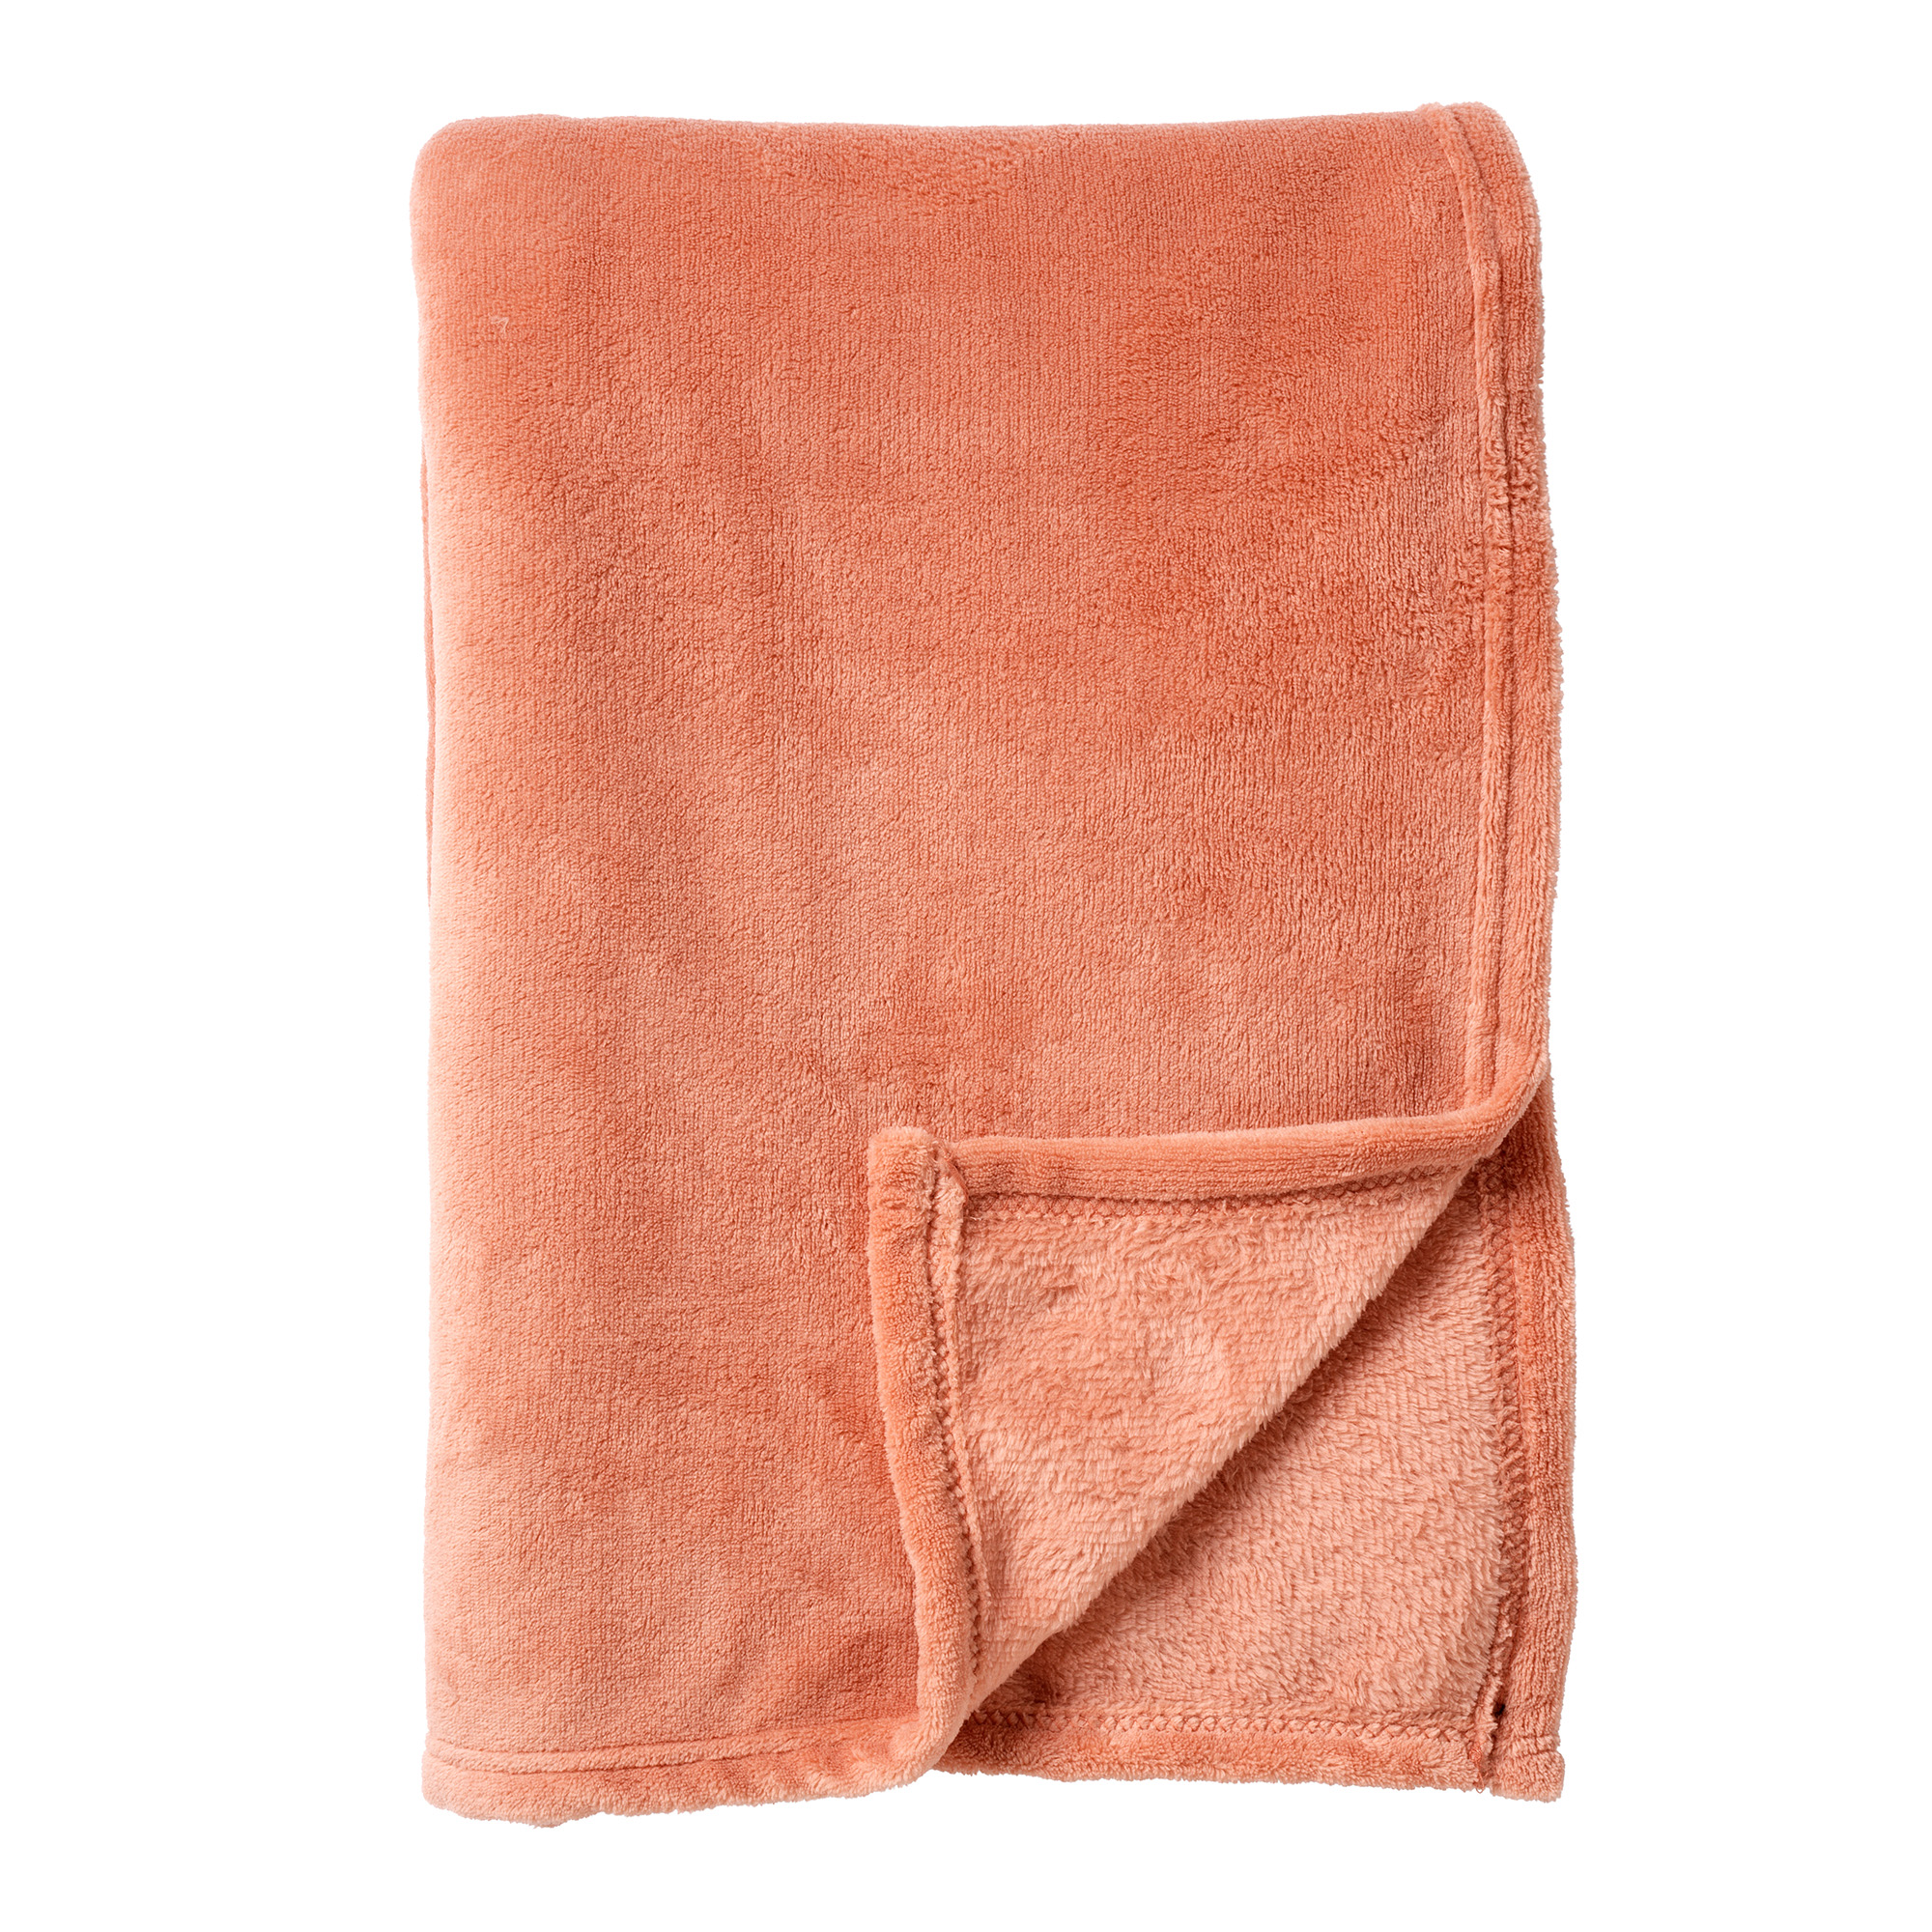 OWEN - Plaid 130x160 cm - coral fleece deken - heerlijk zacht - Muted Clay - roze